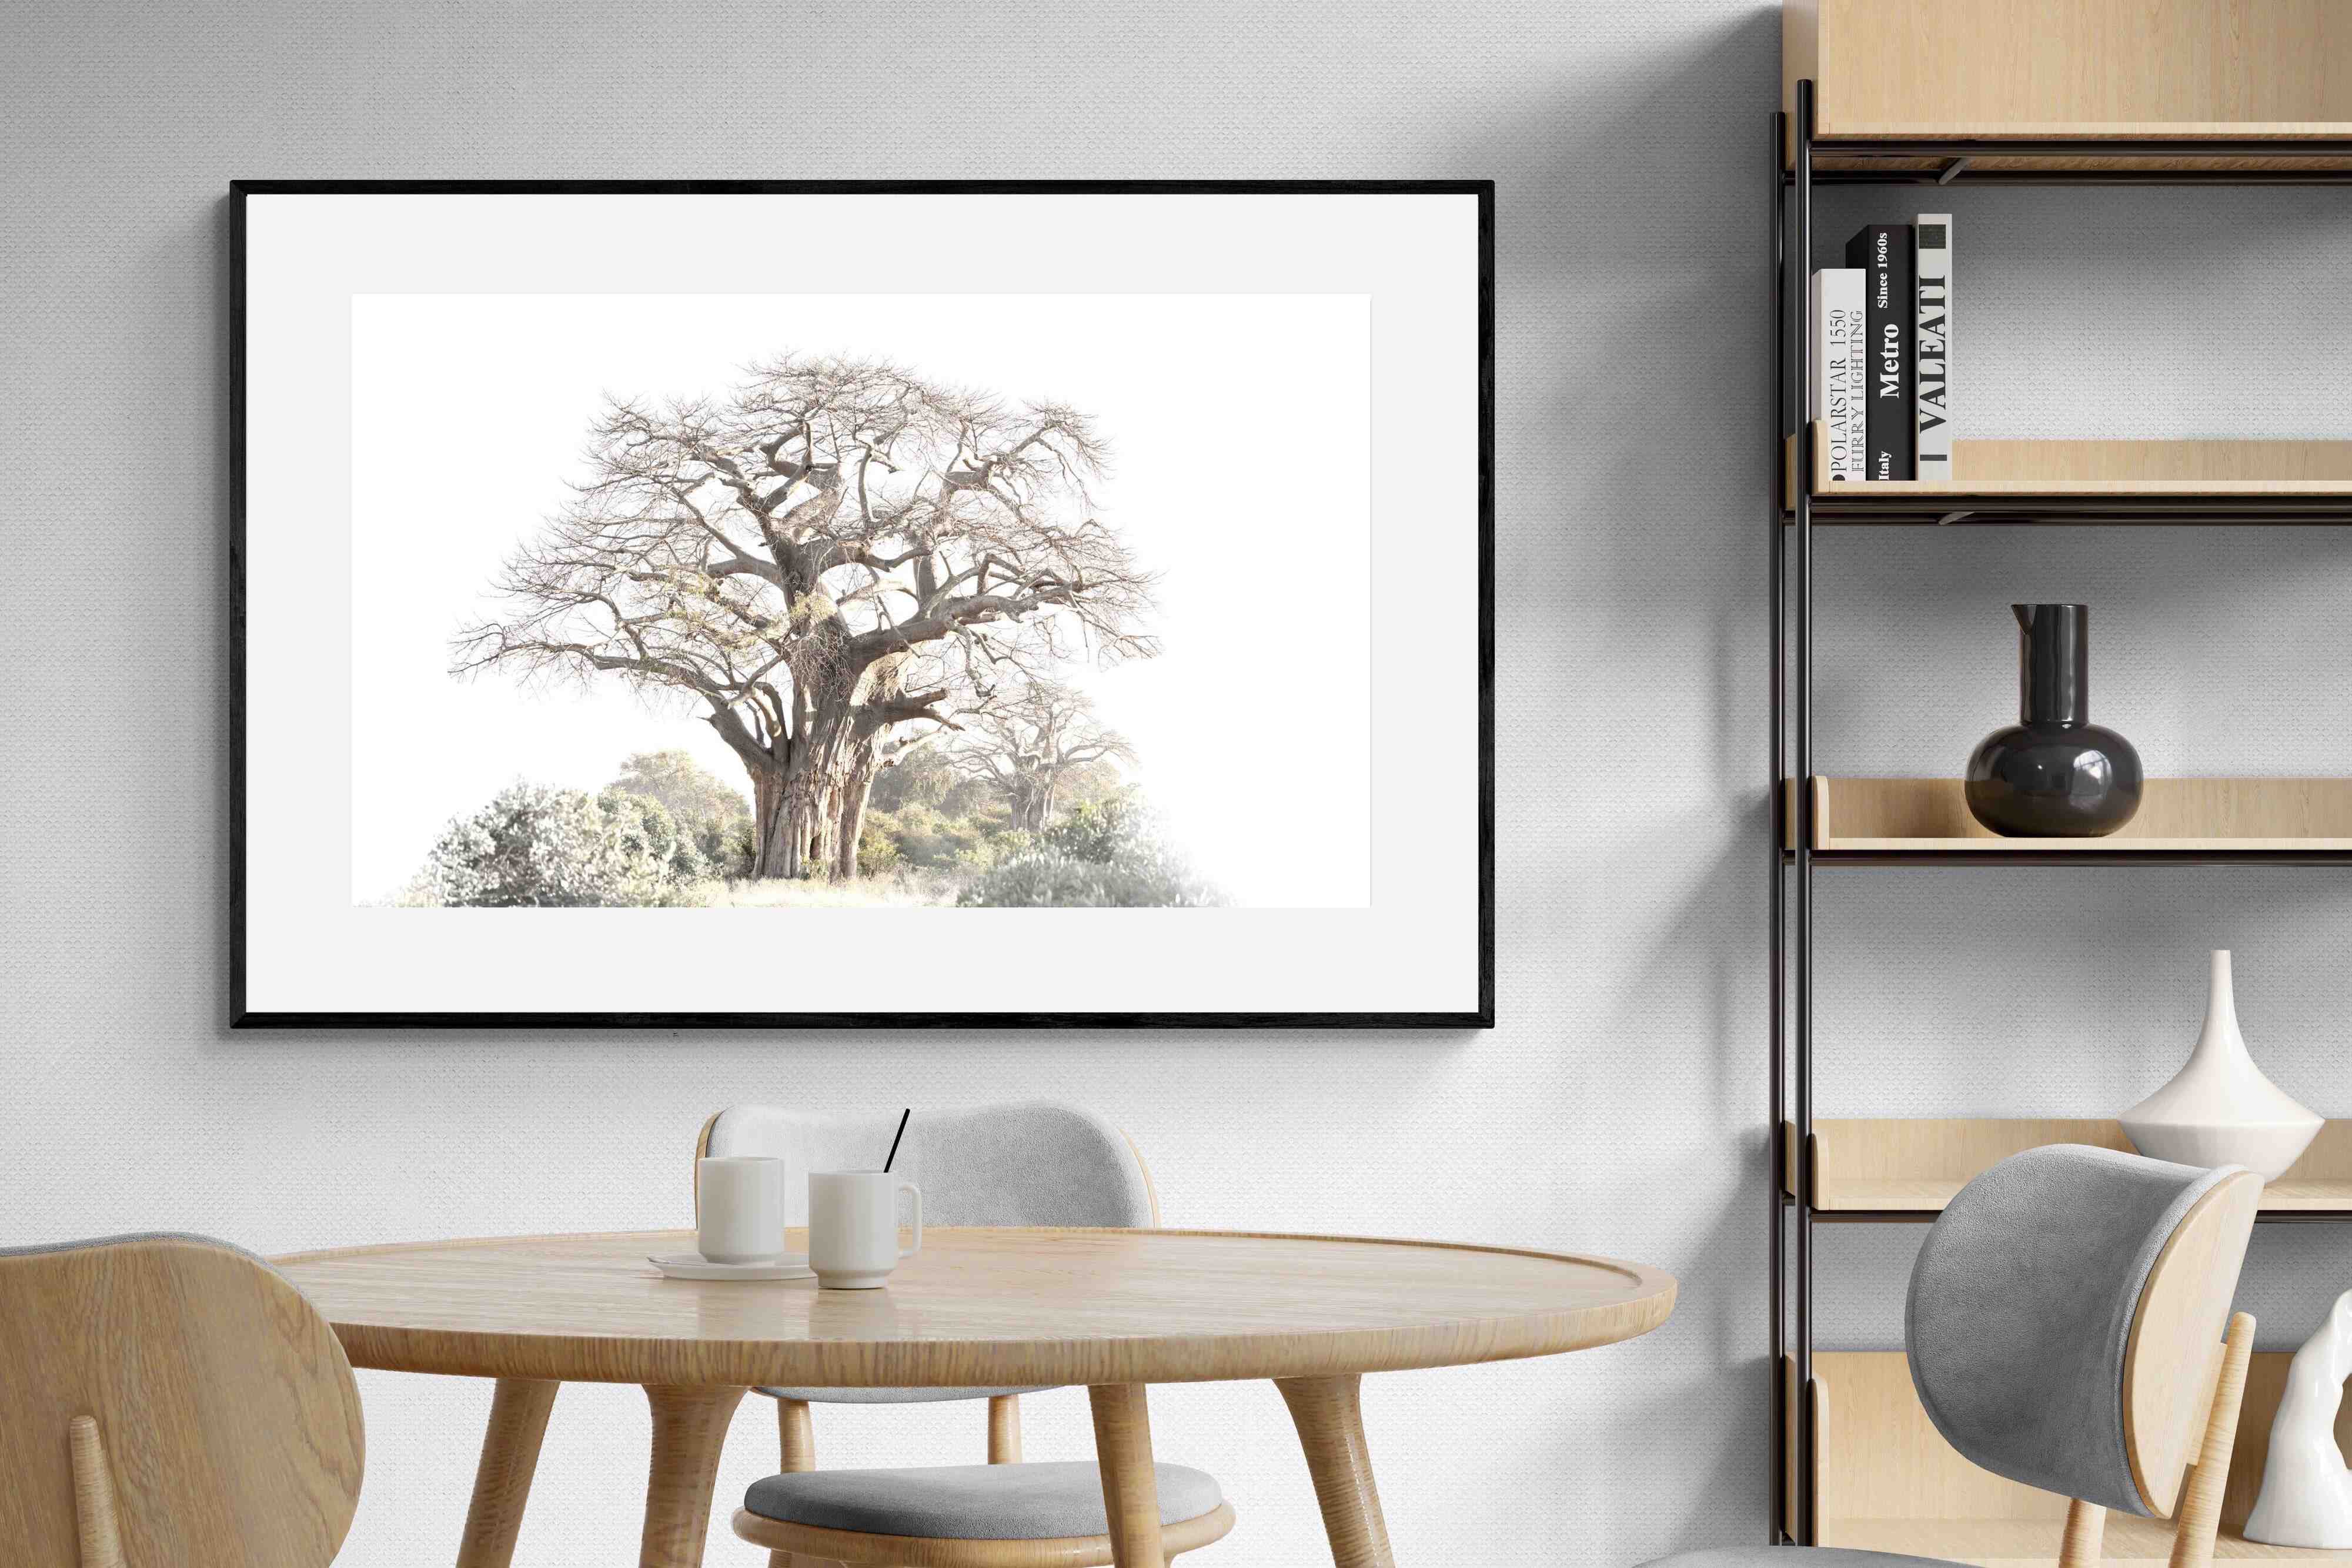 Pixalot Baobab Pair